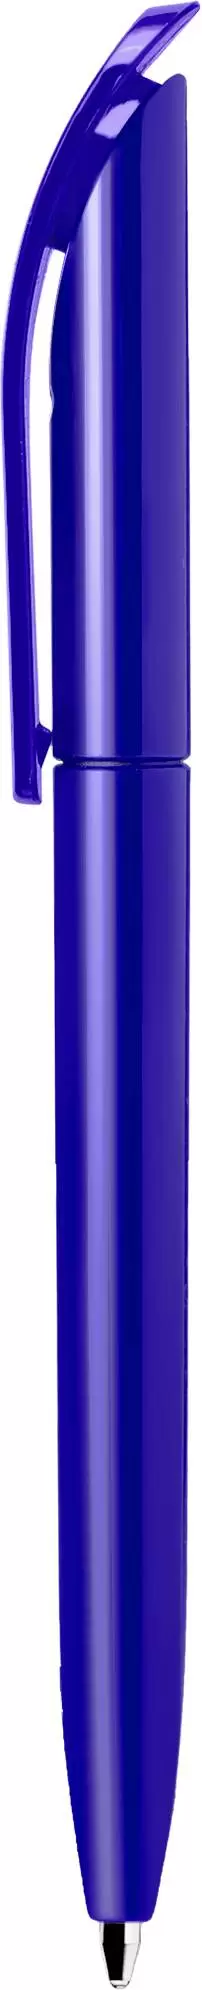 Ручка VIVALDI COLOR Синяя 1336-01